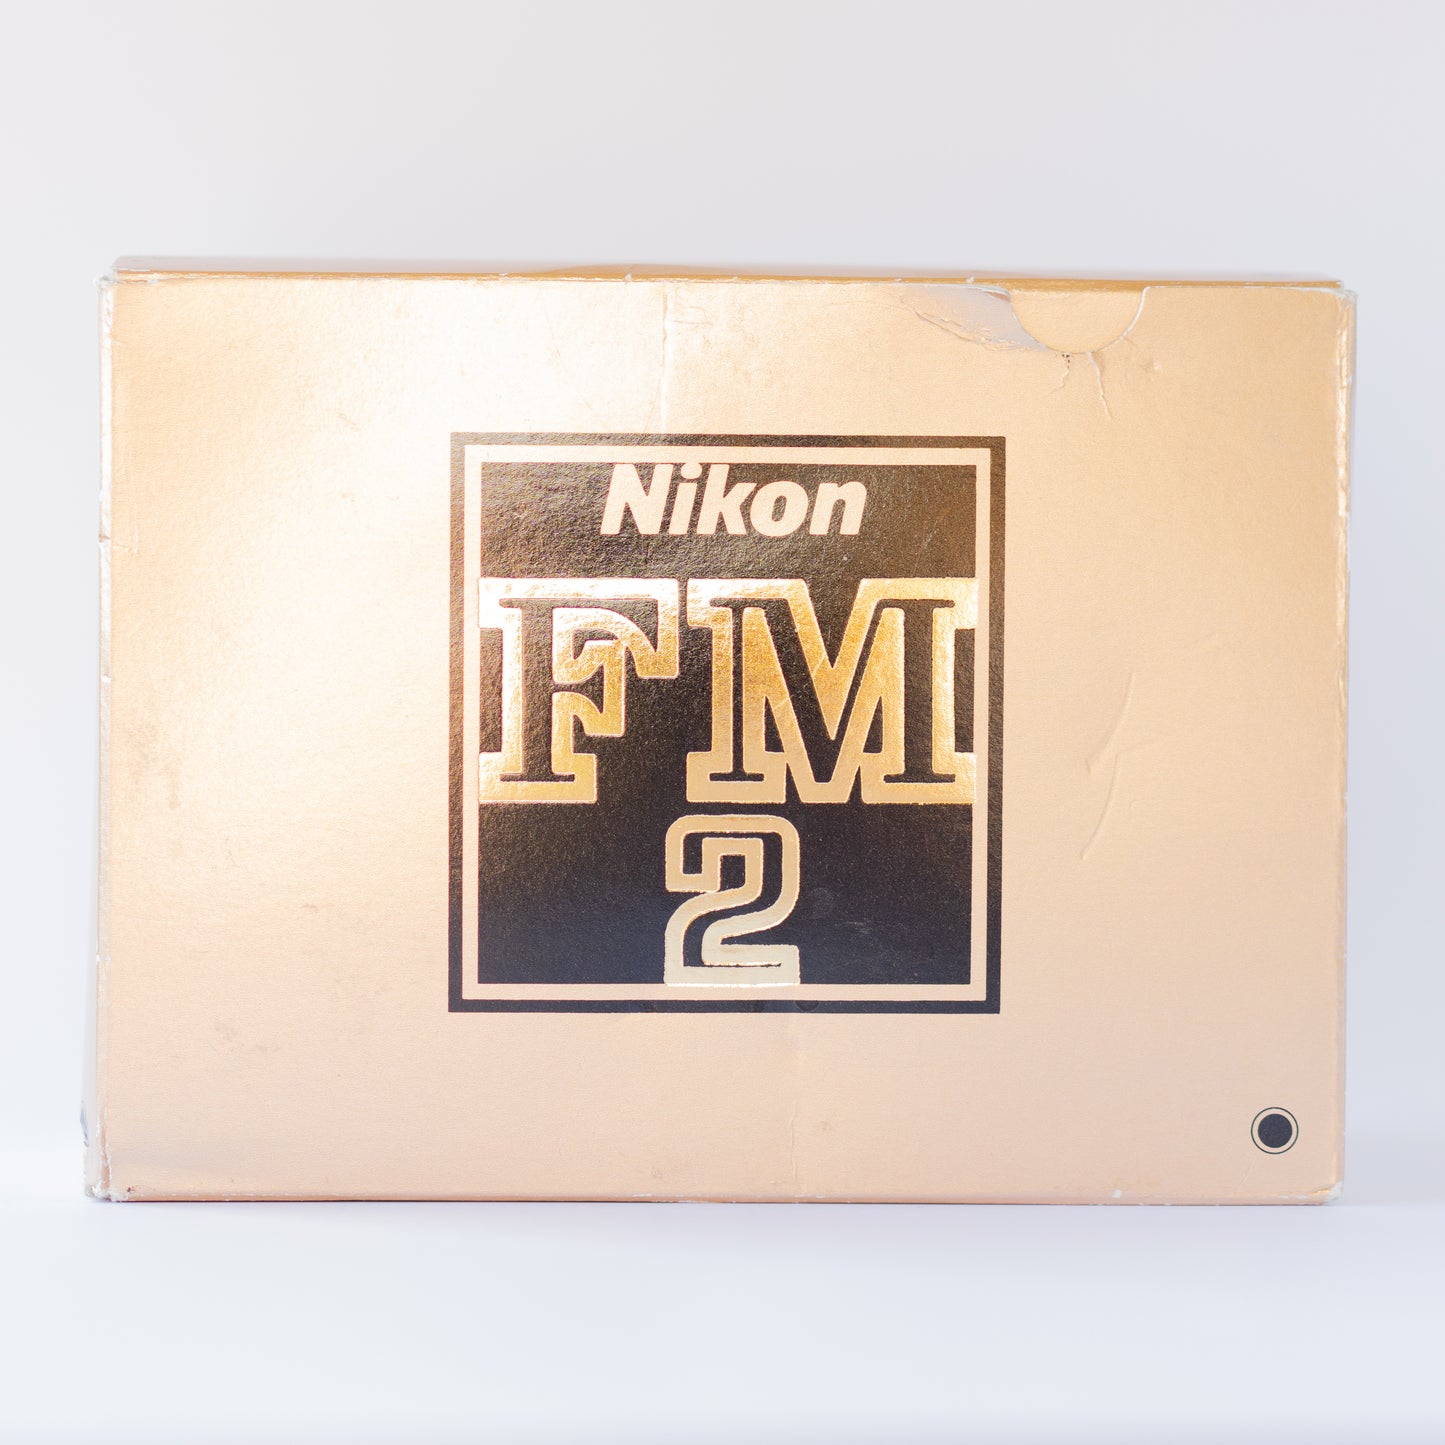 Nikon New FM2 ボディ